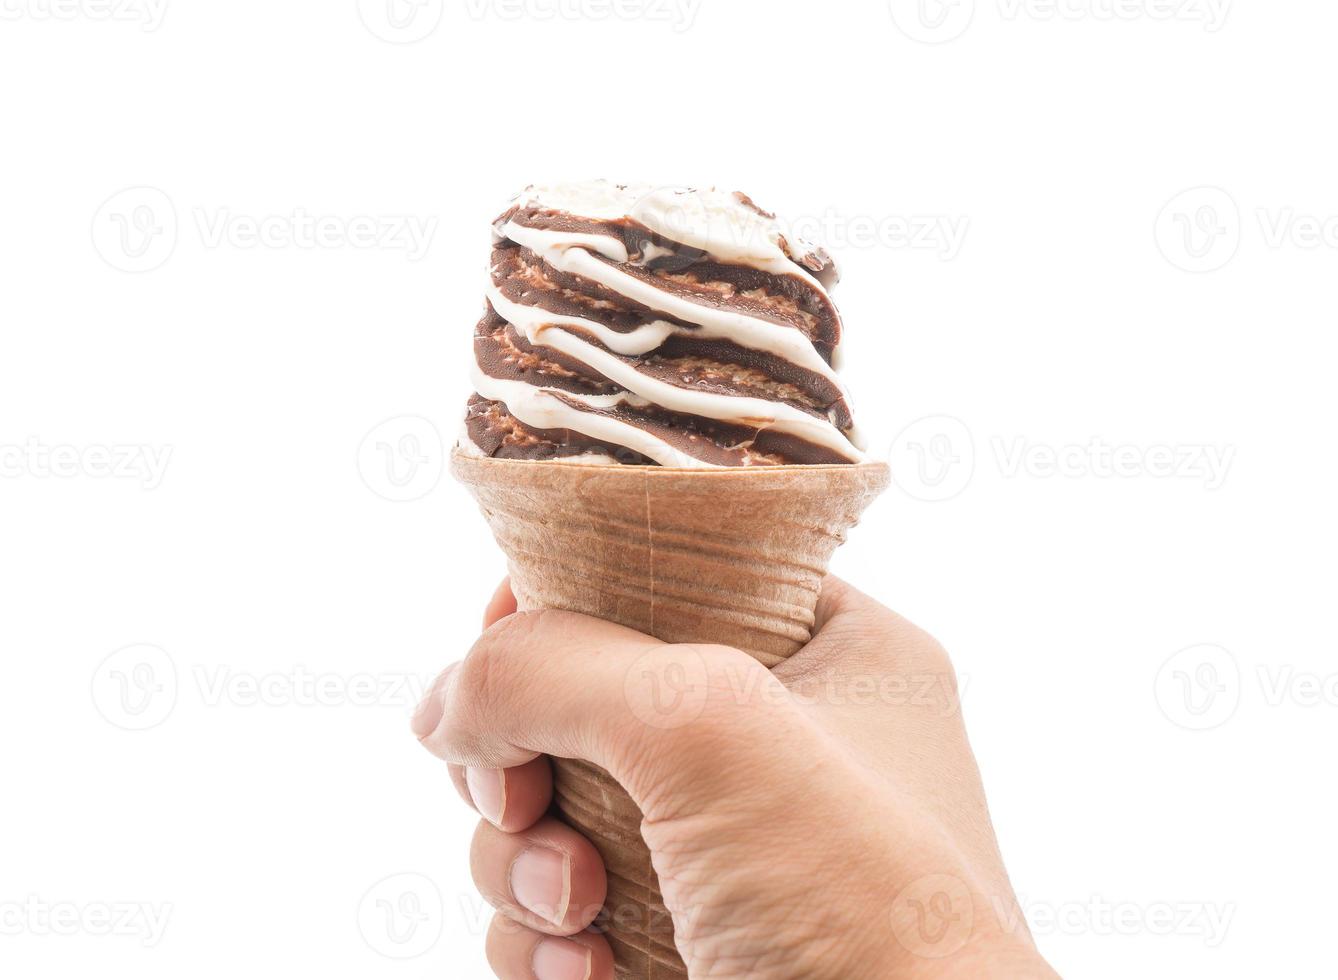 cornet de crème glacée au chocolat sur fond blanc photo